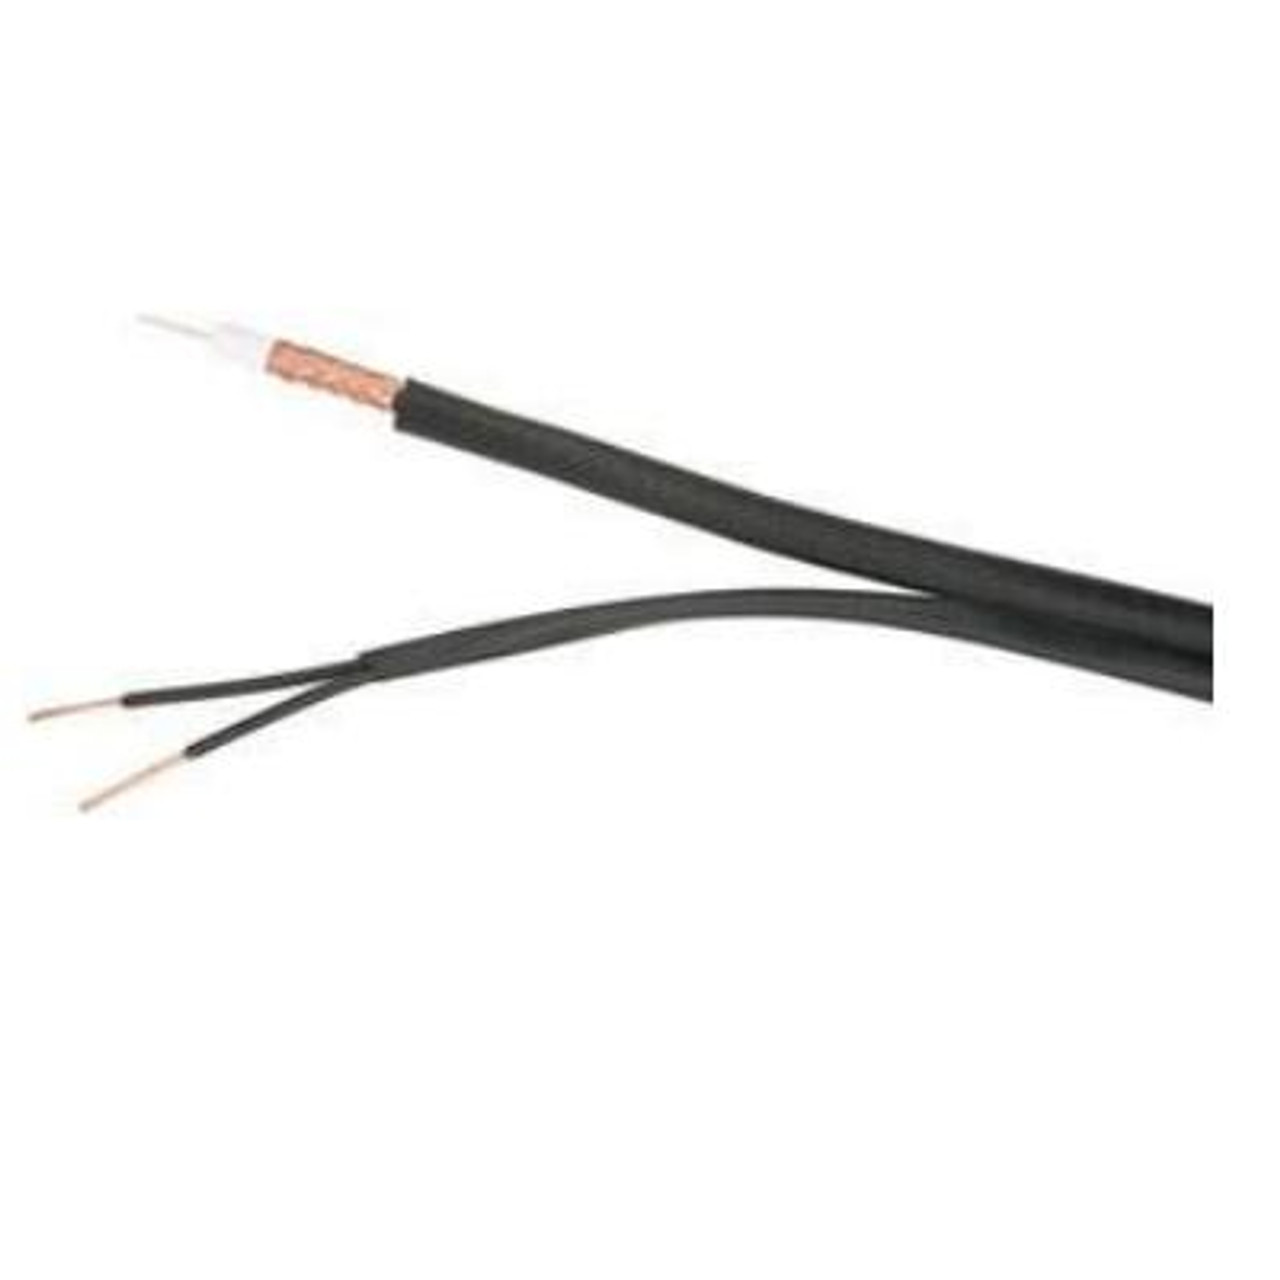 Siamese Cable 1 RG-59 (CCTV), 1 2c 18 AWG (Power), PVC Black